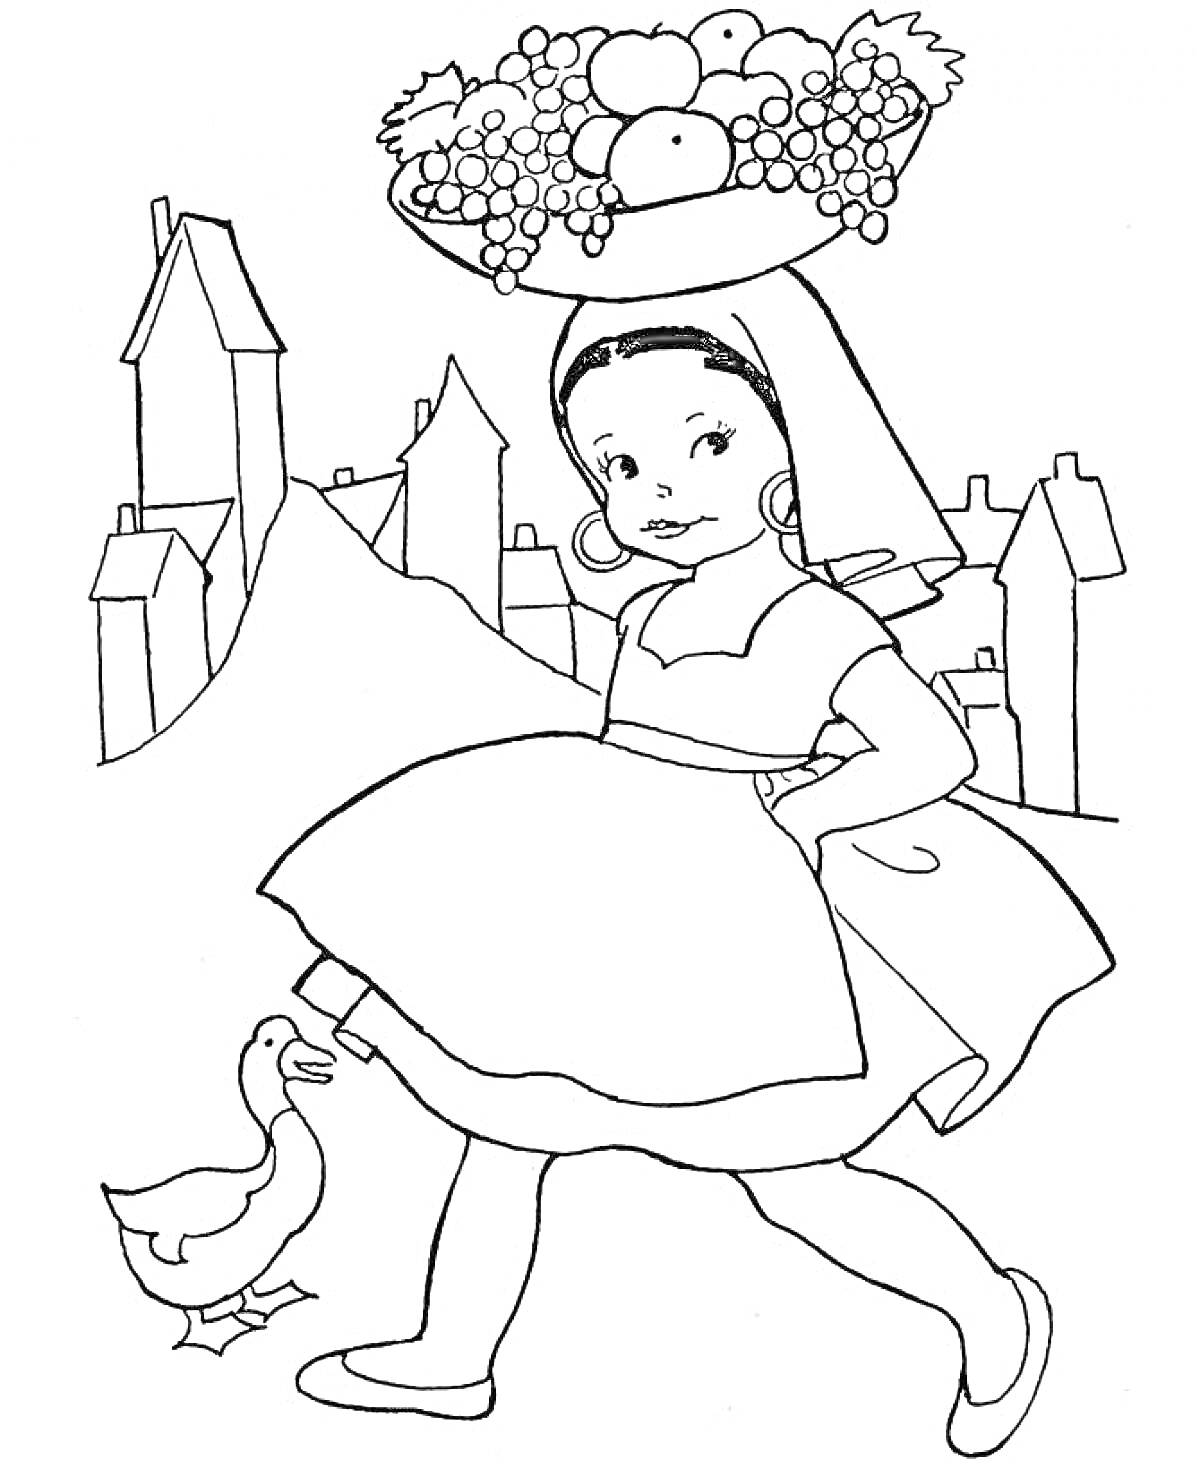 Раскраска Девочка с корзиной фруктов на голове и уткой на фоне итальянского города